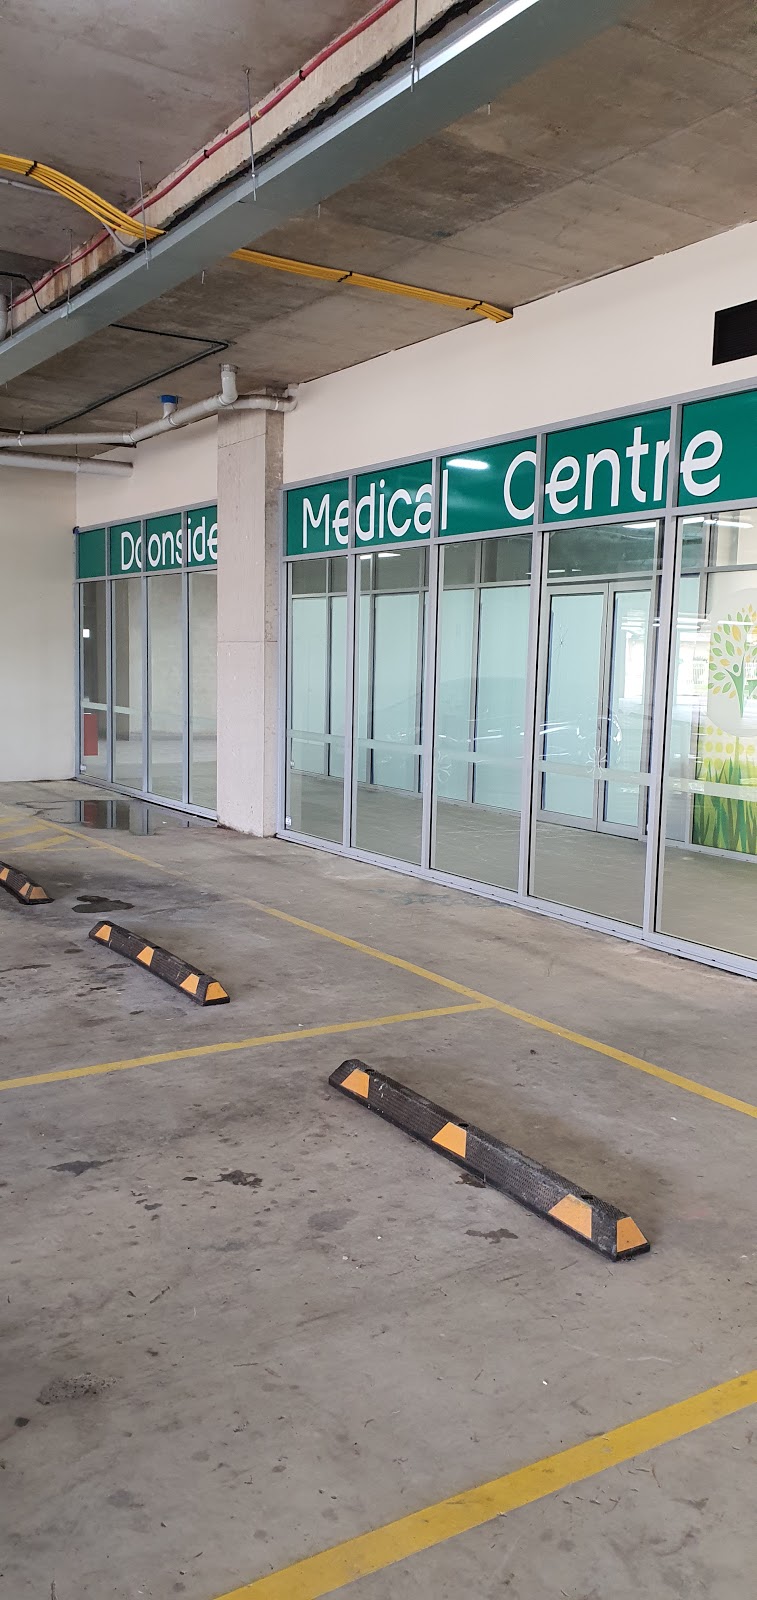 Doonside Medical Centre | hospital | Shop 1/185 Knox Rd, Doonside NSW 2767, Australia | 0288817939 OR +61 2 8881 7939